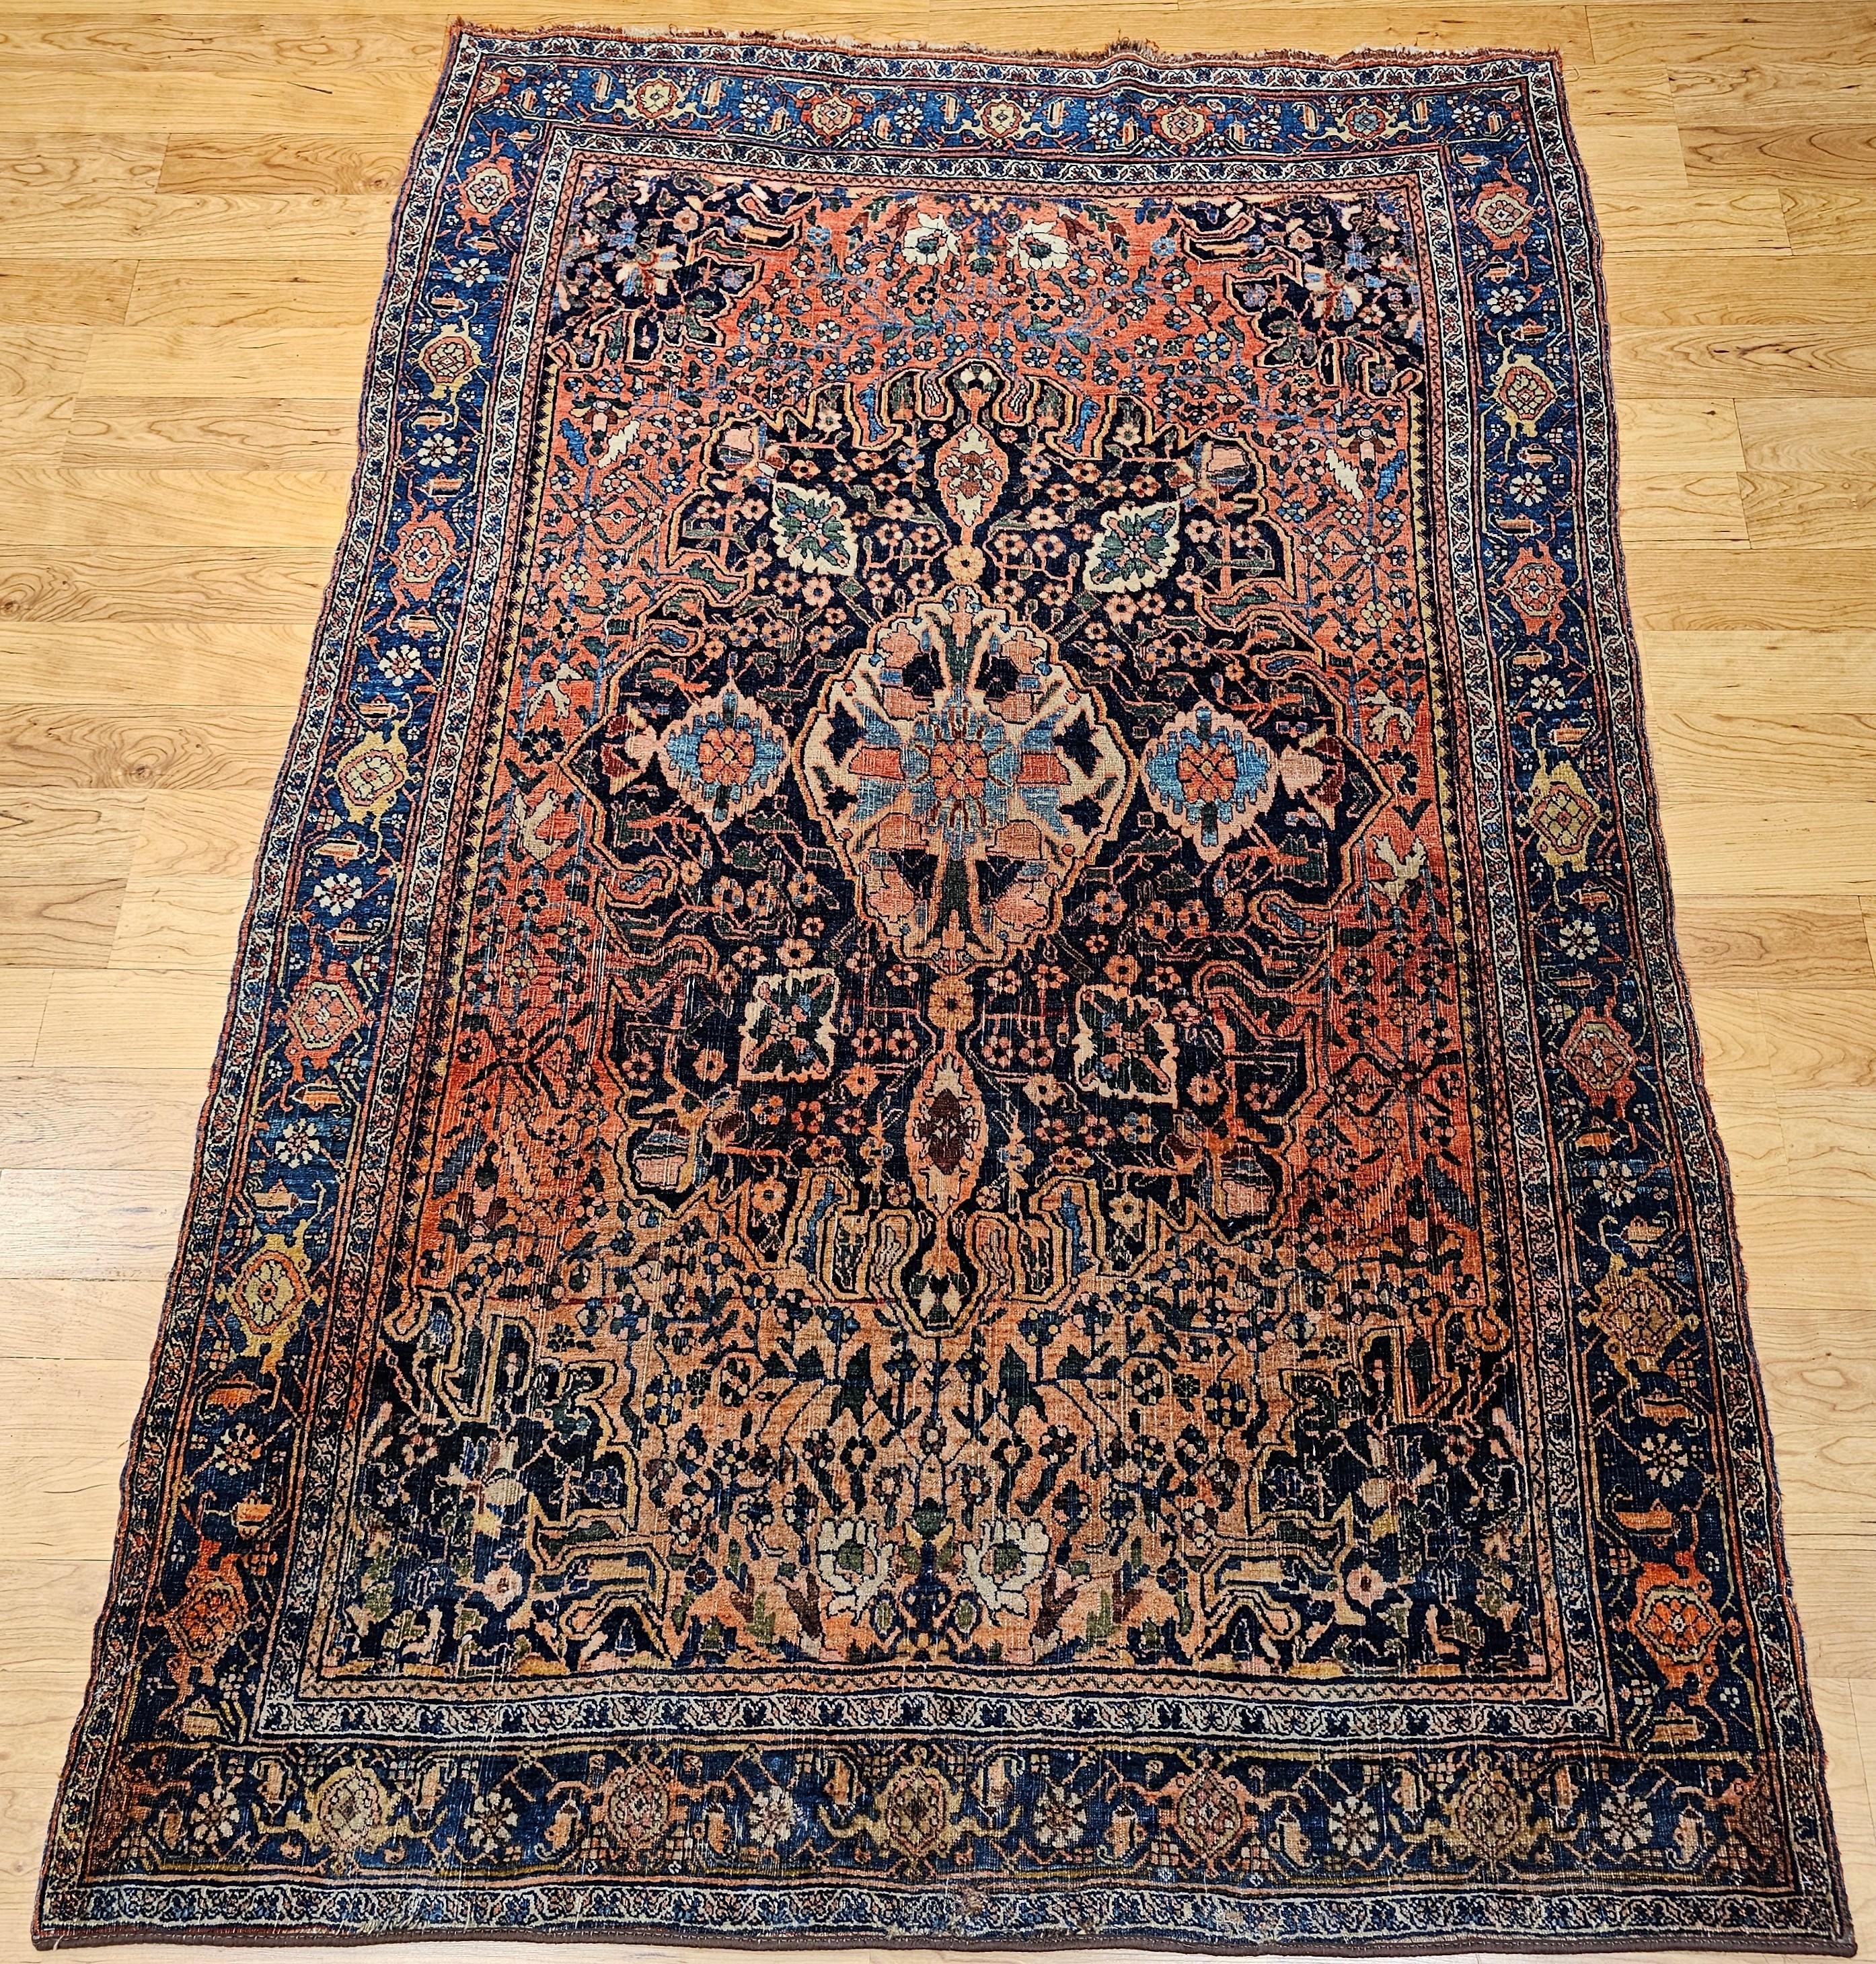 Persischer Bidjar-Teppich aus dem frühen 20. Jahrhundert mit einem Medaillonmuster in einem floralen geometrischen Muster in den Farben Rot, Französisch-Blau und Marineblau, Grün und Gelb.   Der Teppich hat eine Kombination aus einem abraschierten